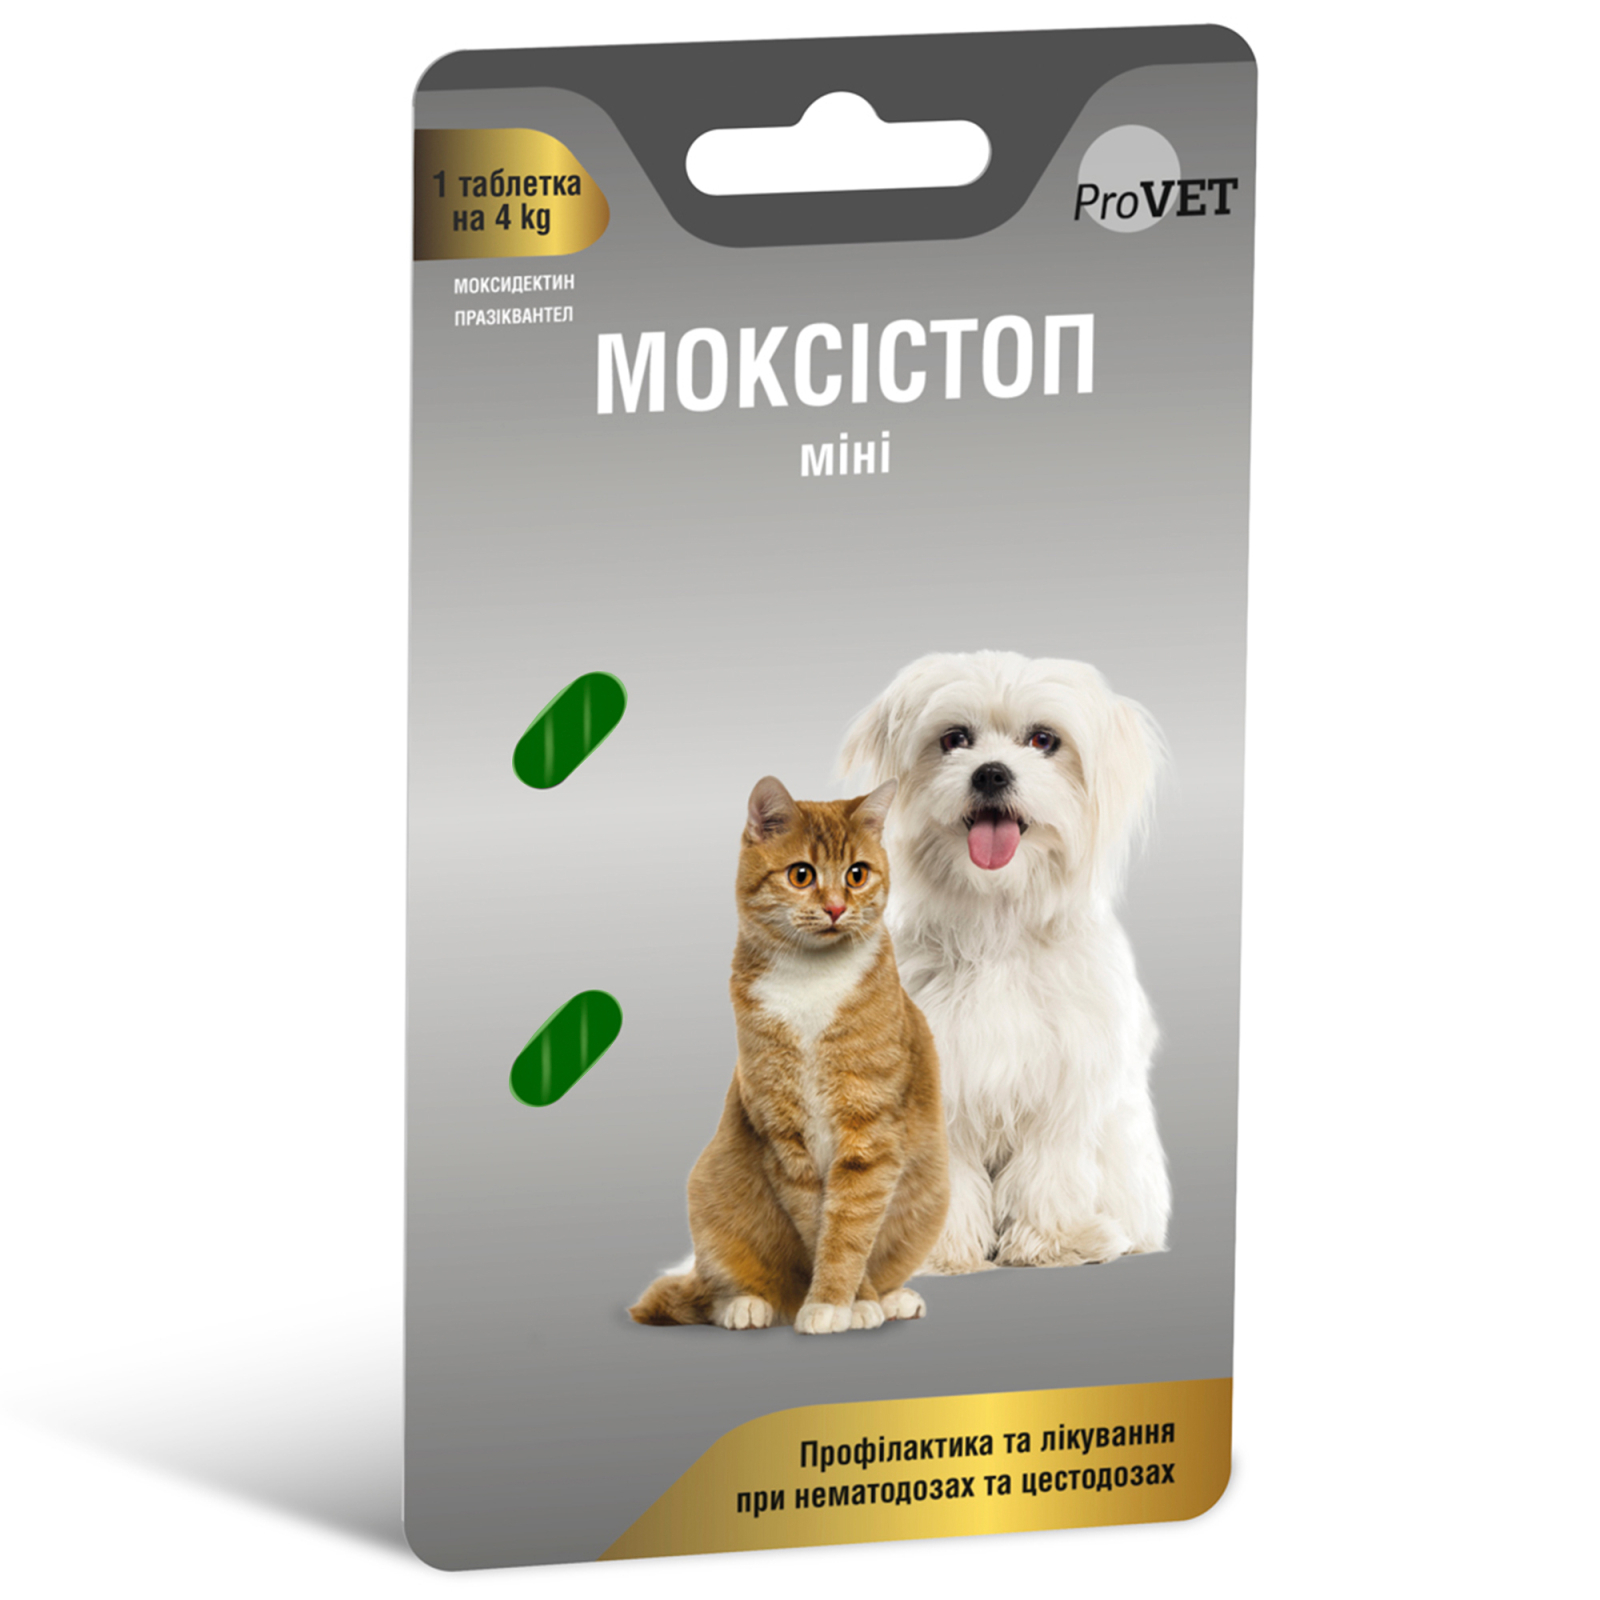 Таблетки для животных ProVET Моксистоп мини Антигельминтный препарат 2 таблетки по 120 мг (4823082419203)